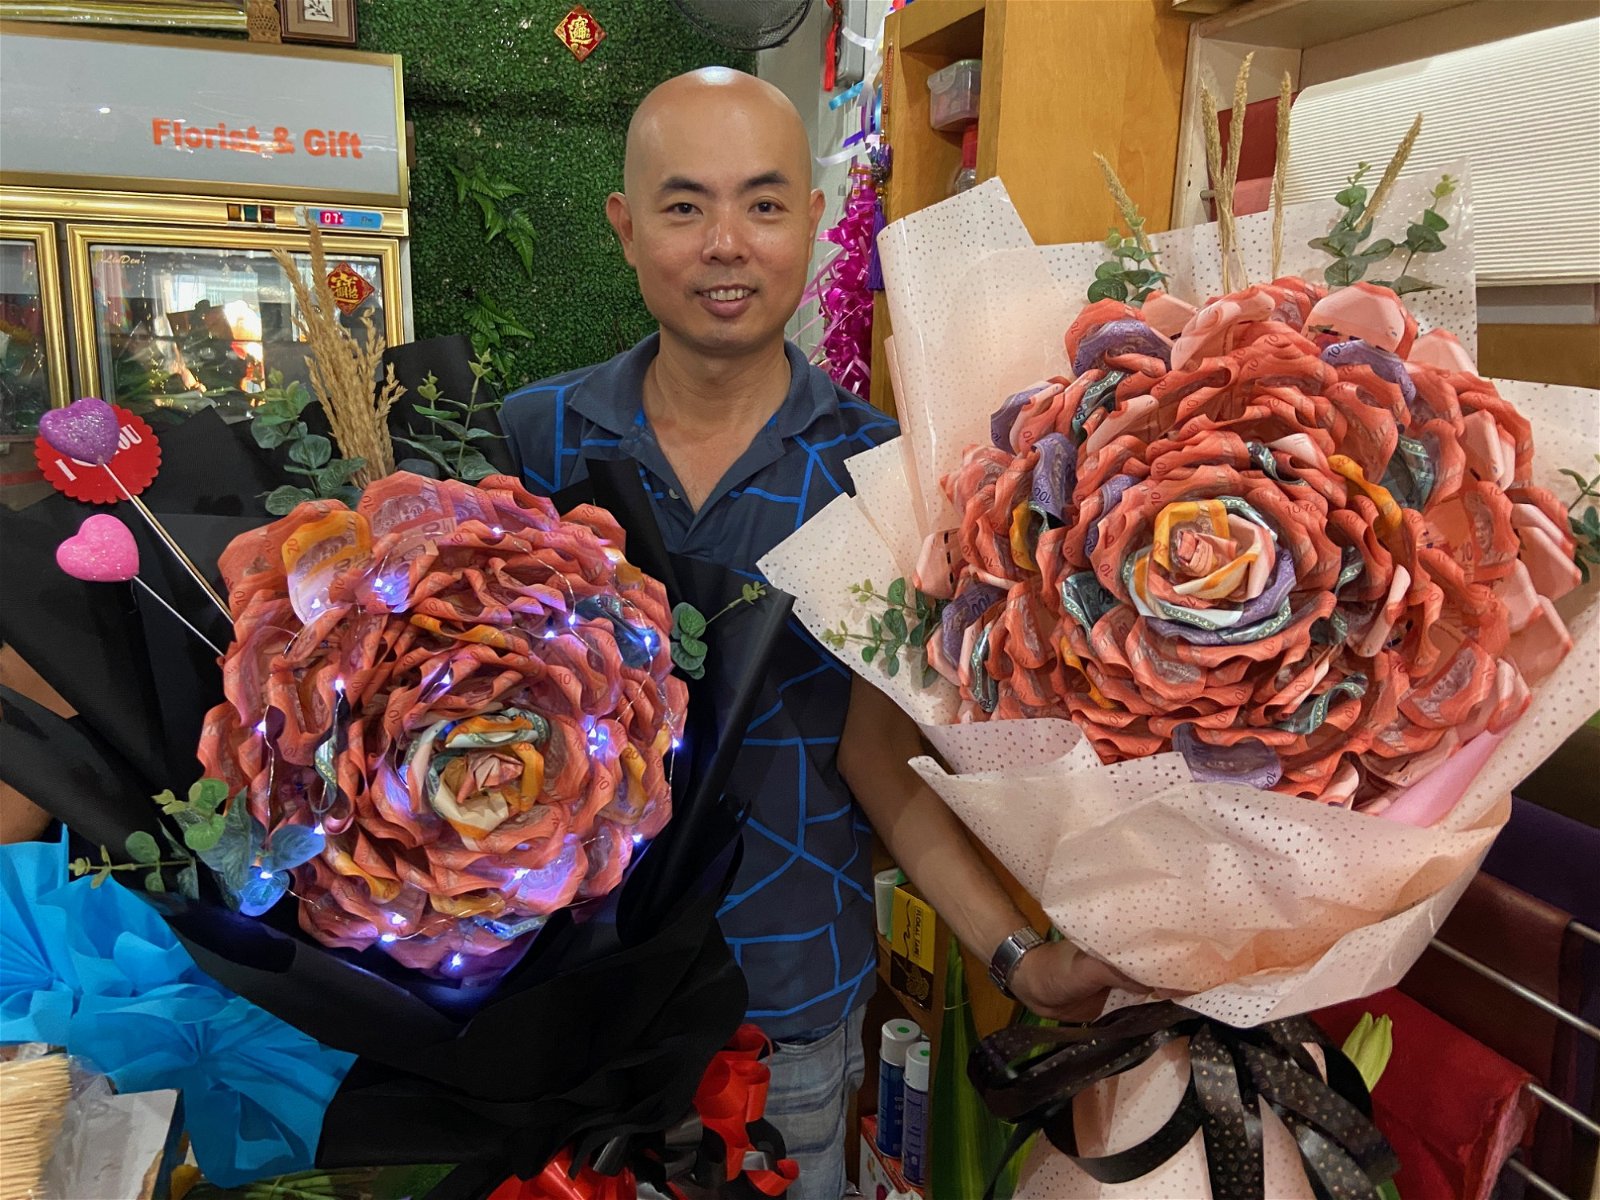 亿花苑负责人郭隆华向记者展示，使用钞票制成的巨型玫瑰花束，他坦言，该花束的价格不菲。